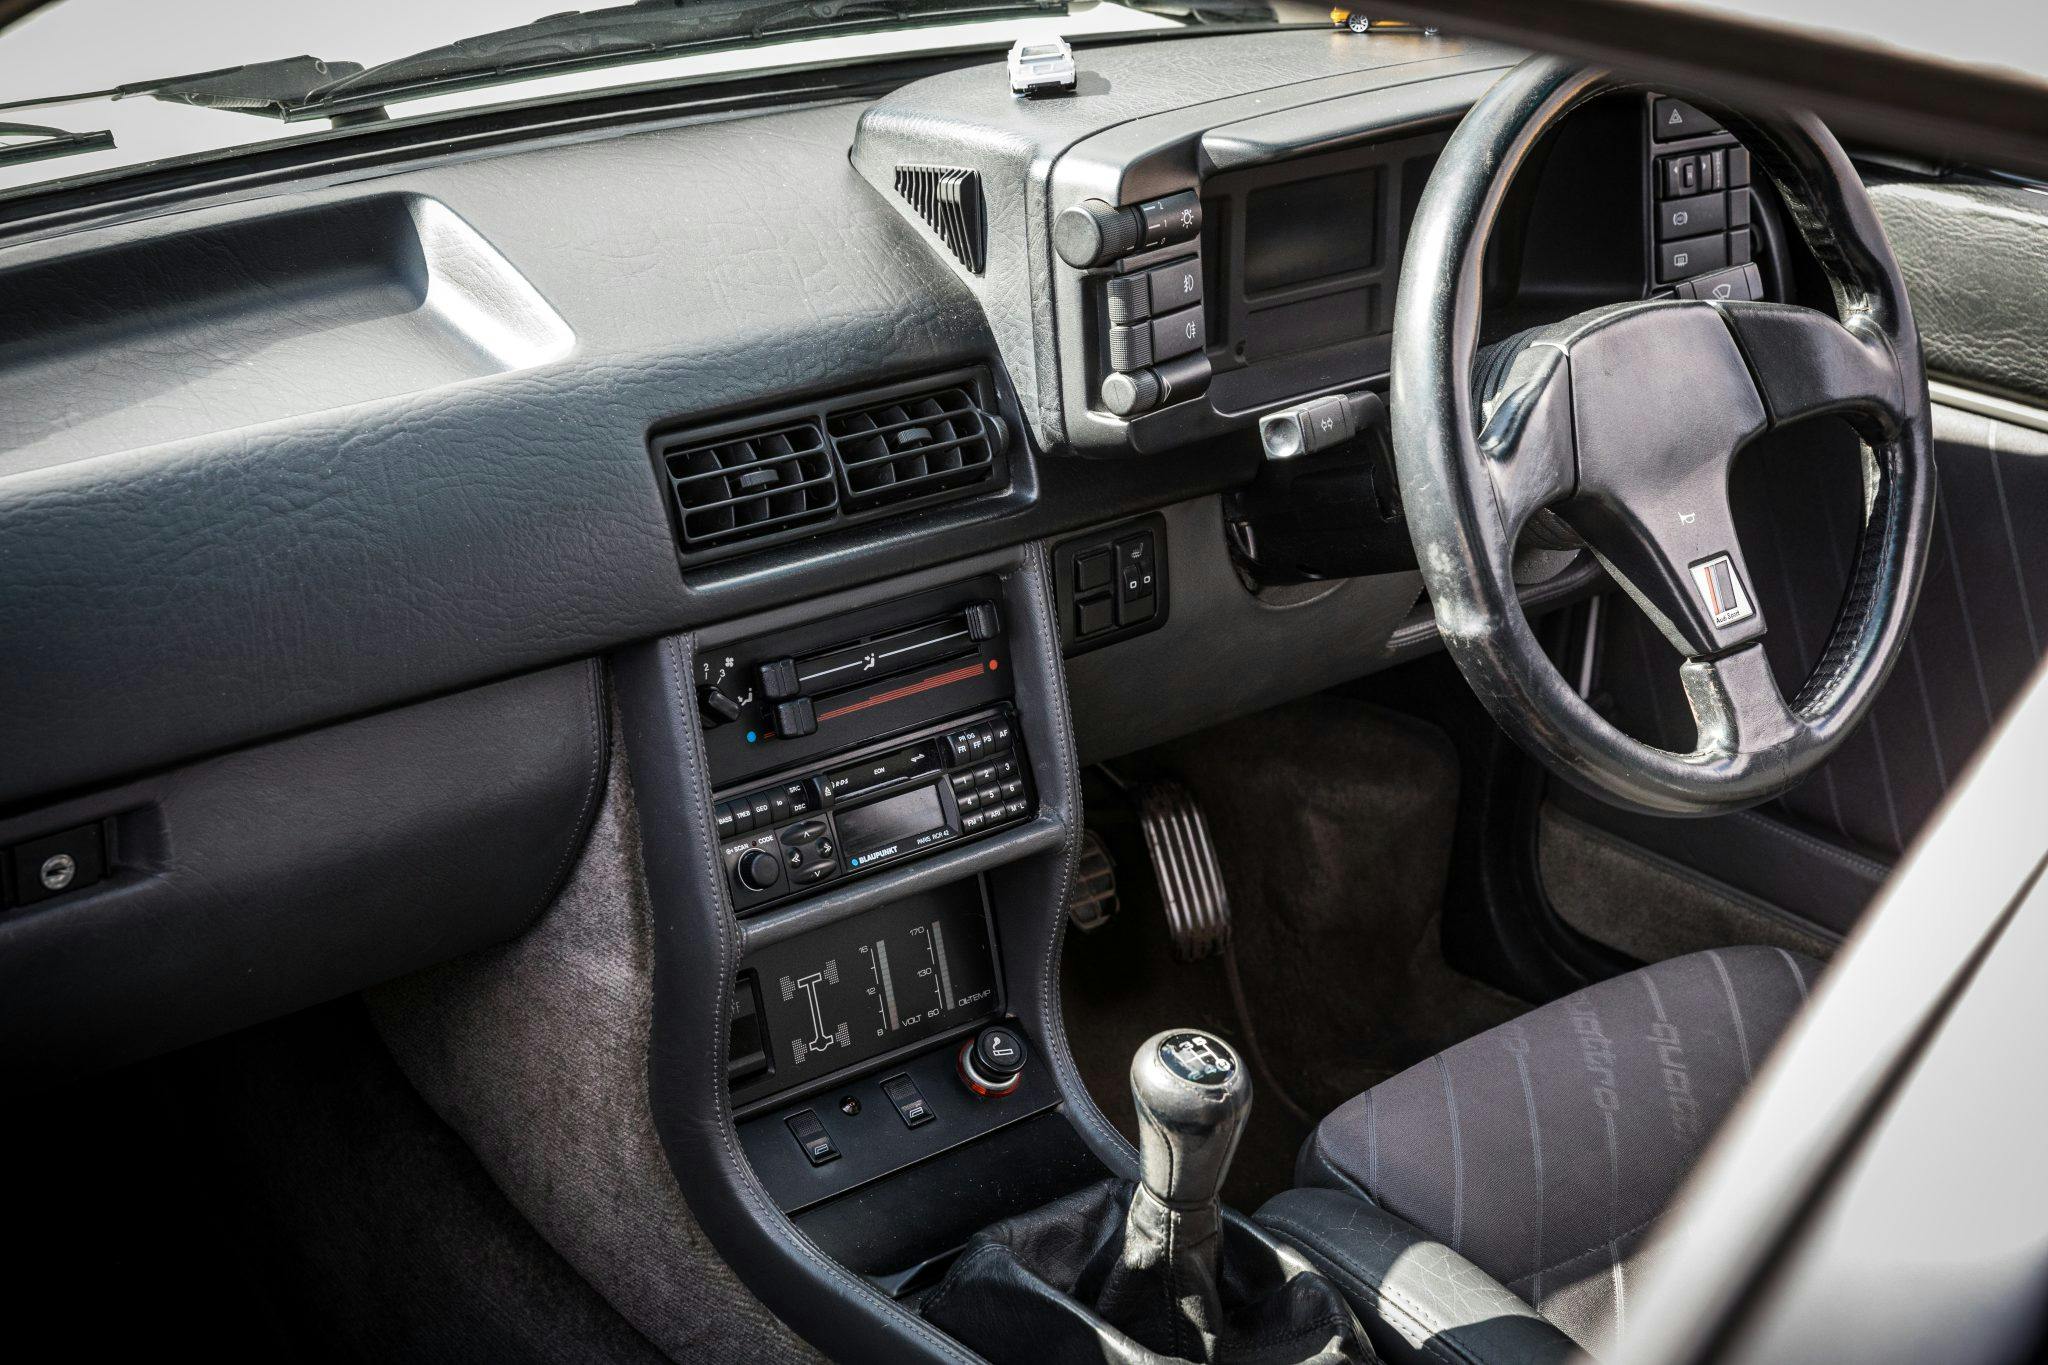 Car interior analog dials